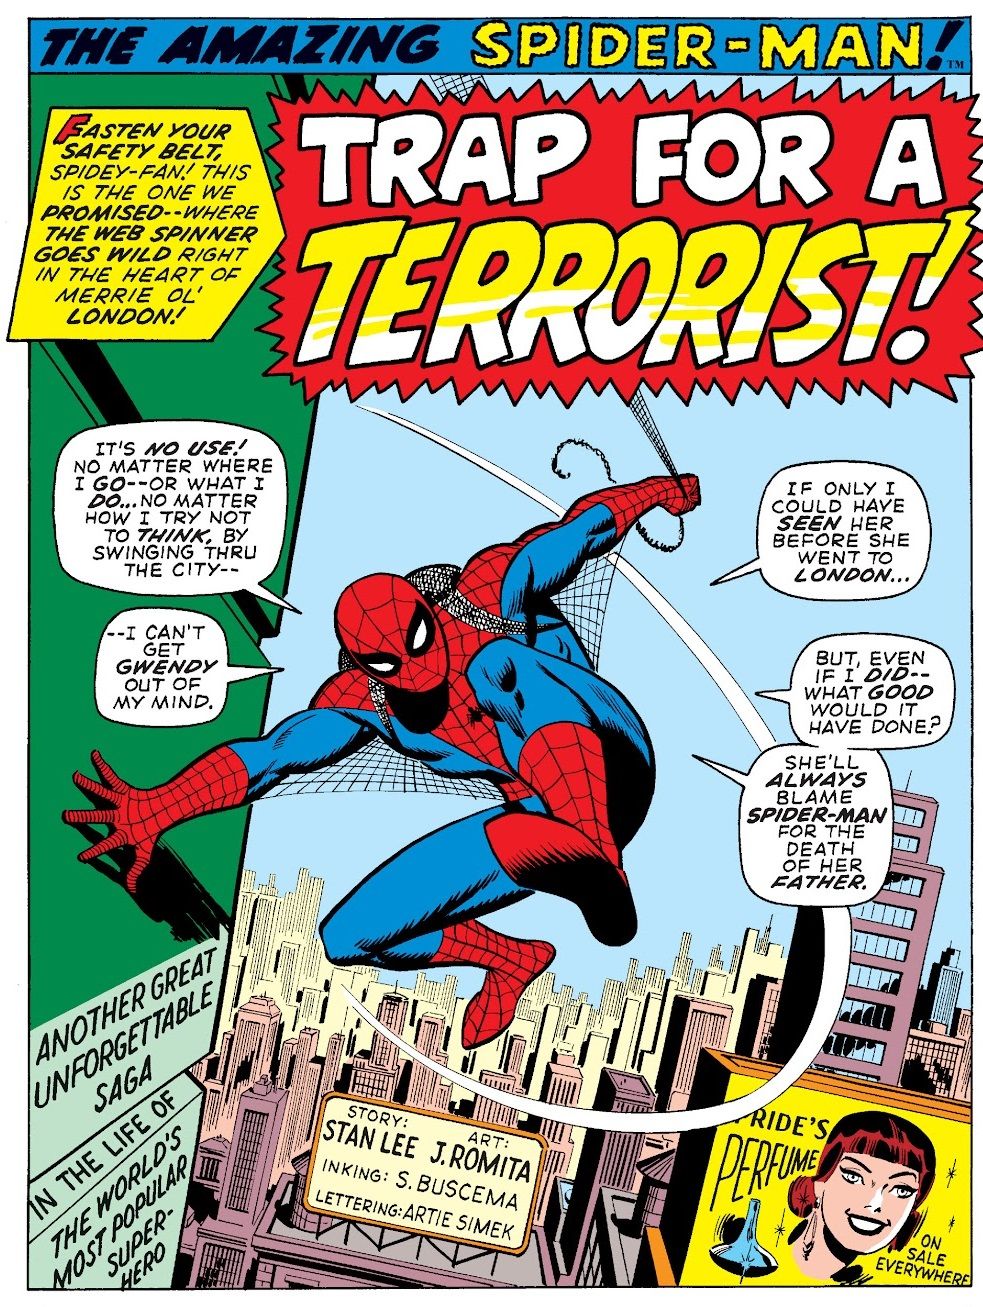 Человек-паук: пять раз он открывал проблемы, жалуясь, пока размахивал паутиной